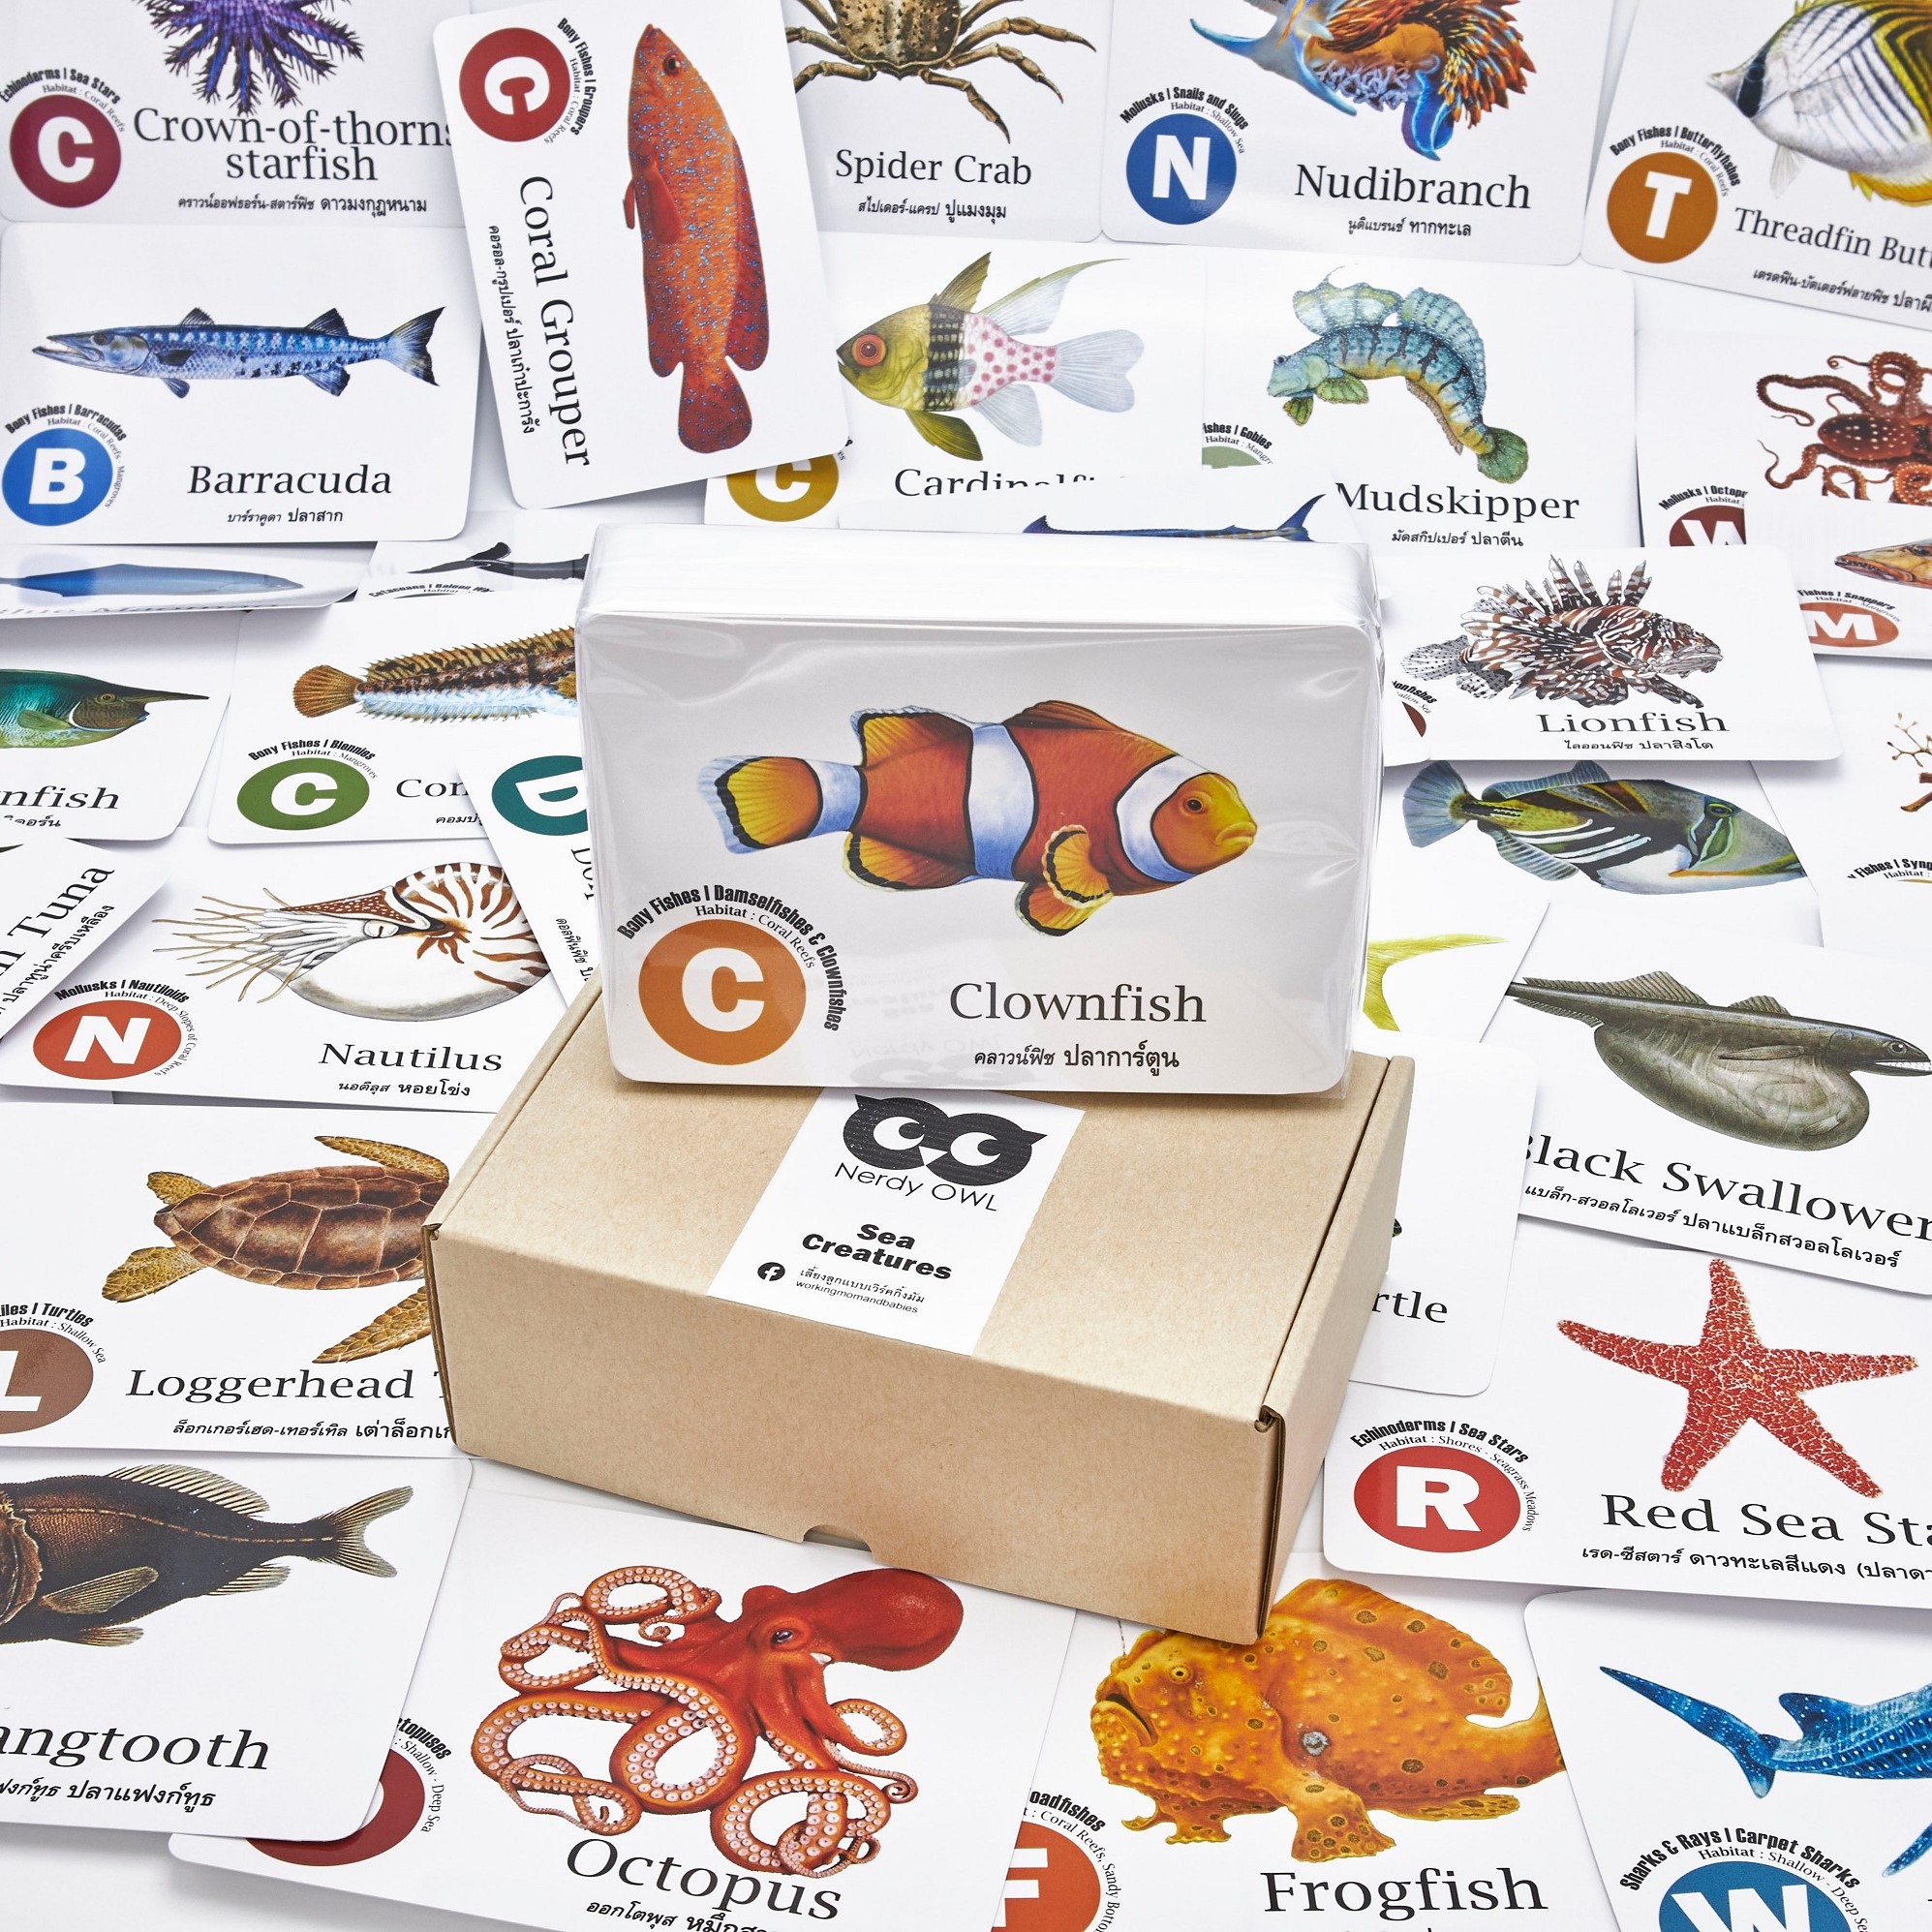 แฟลชการ์ด สัตว์ใต้ทะเล Flash Cards Sea Creatures บัตรคำ การ์ดคำศัพท์ เนิร์ดดี้อาว (Nerdy Owl) จำนวนใบมากที่สุด 108 ใบ ของเล่นเสริมพัฒนาการ